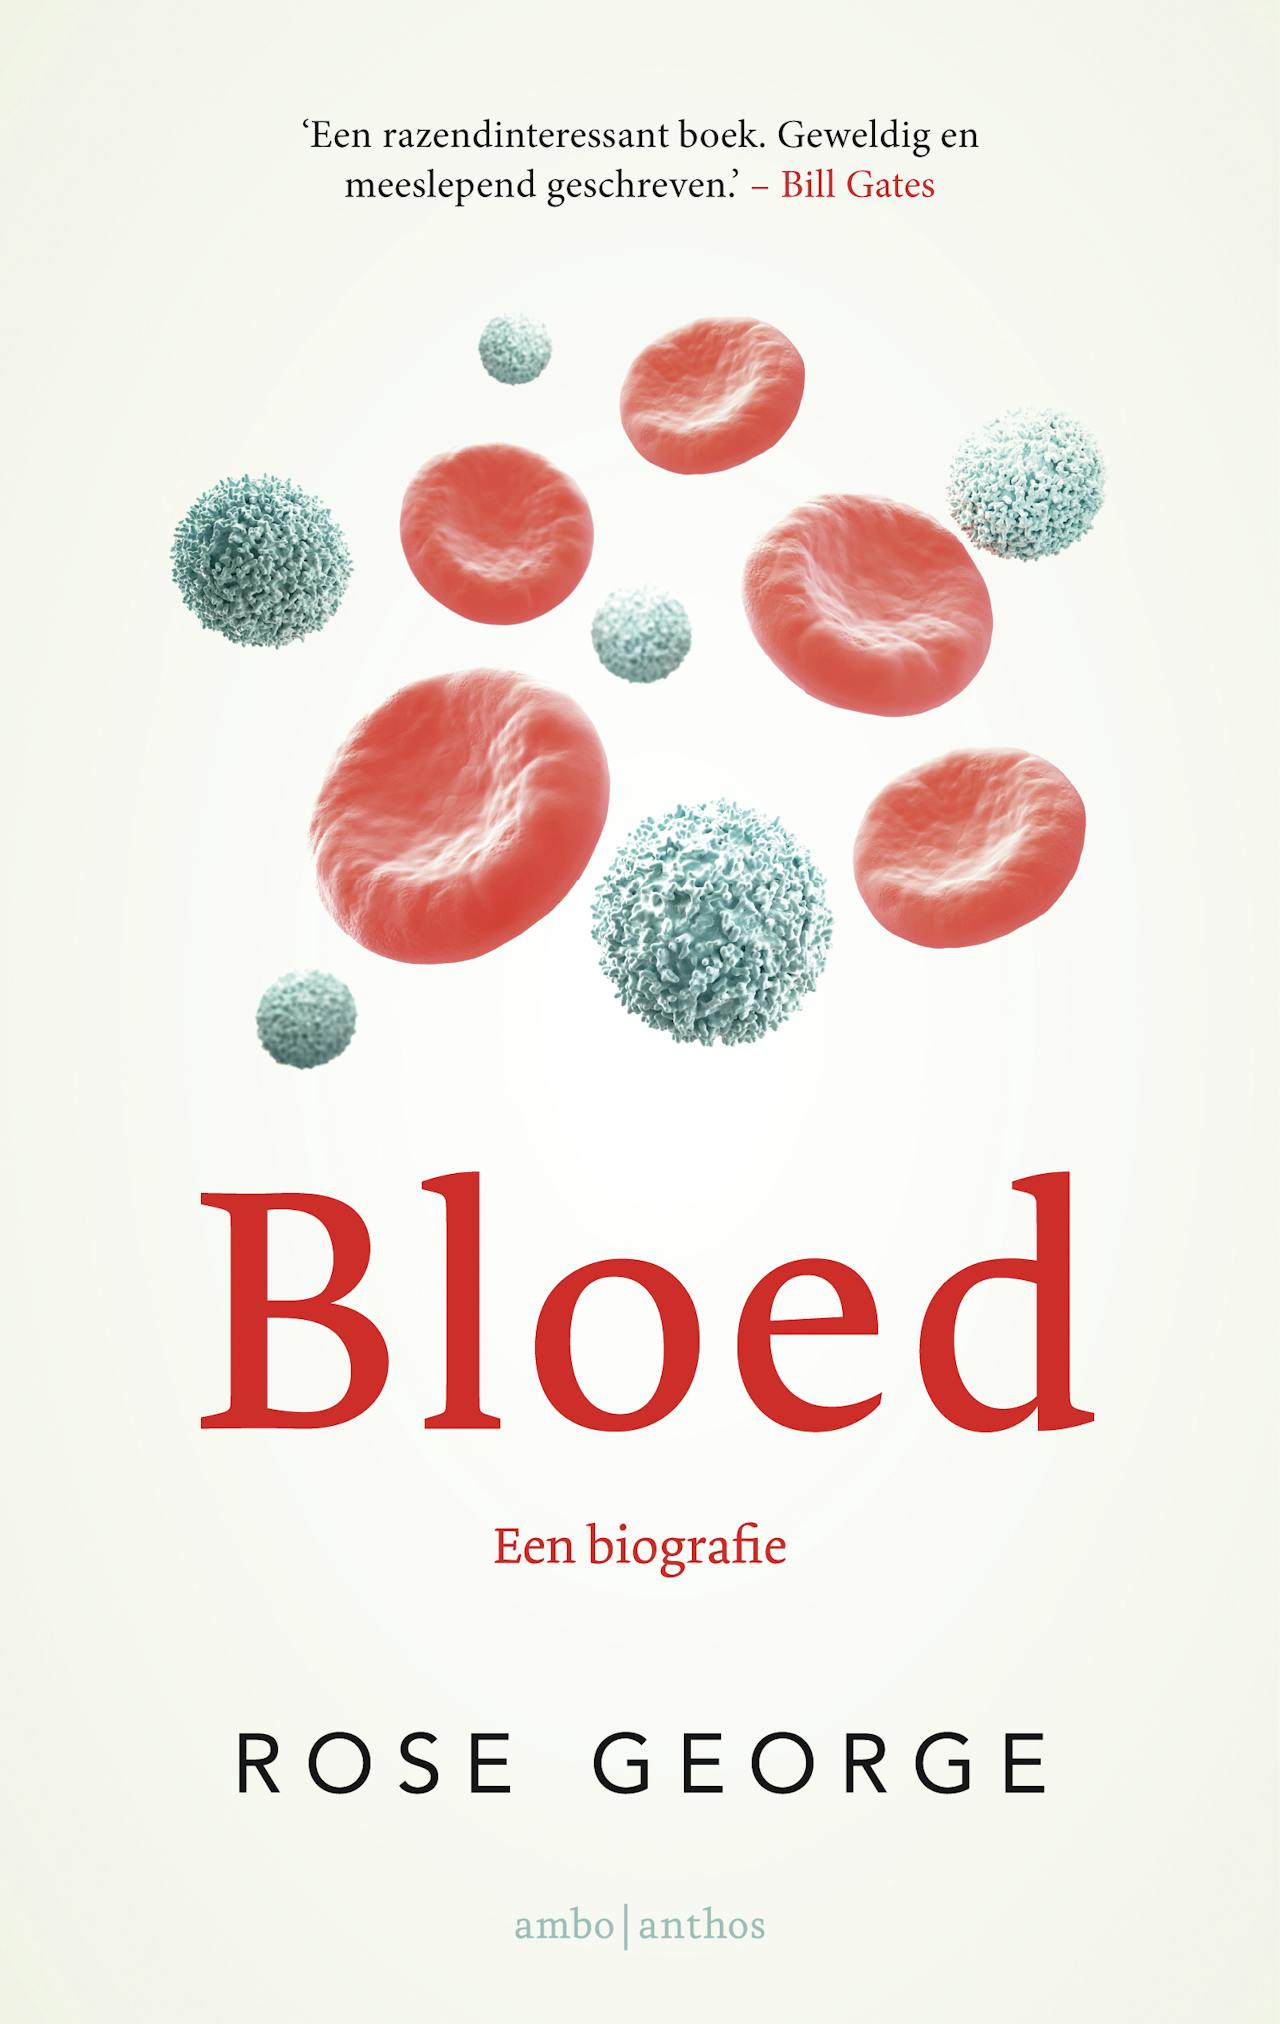 Cover van een boek van Rose George: Bloed. Een biografie.